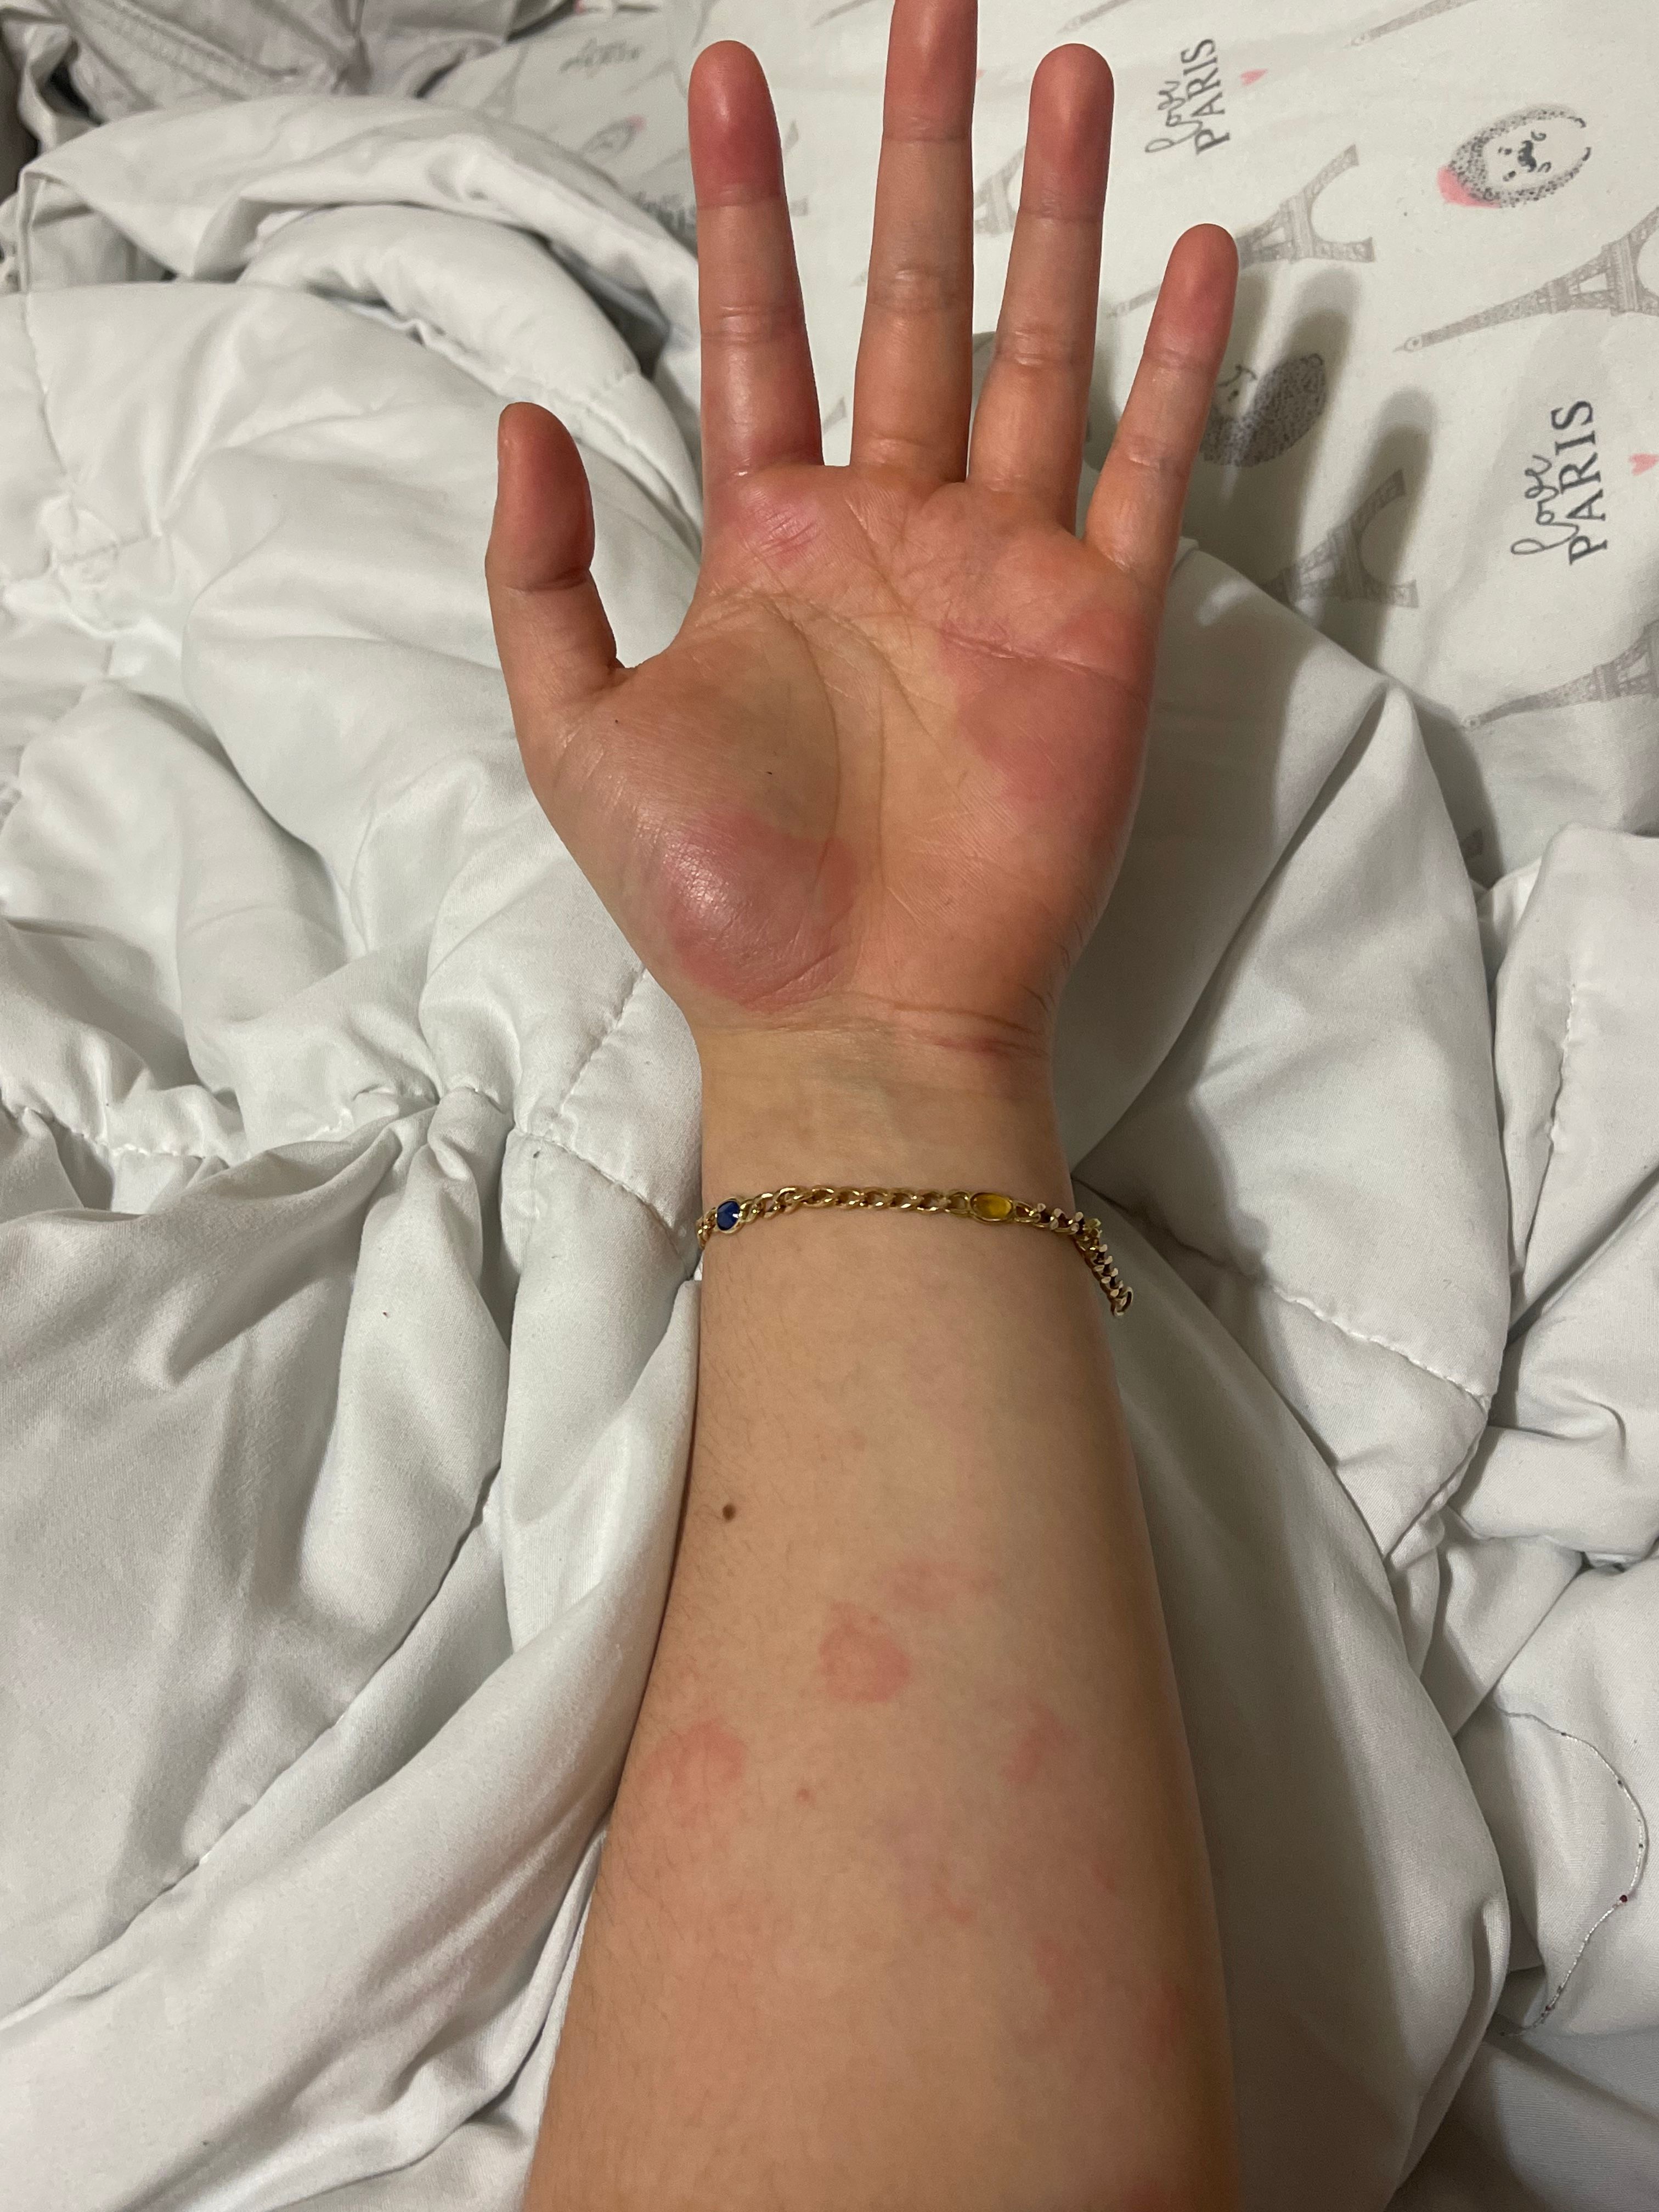 Olaplex severe allergic reaction - Beauty Insider Community